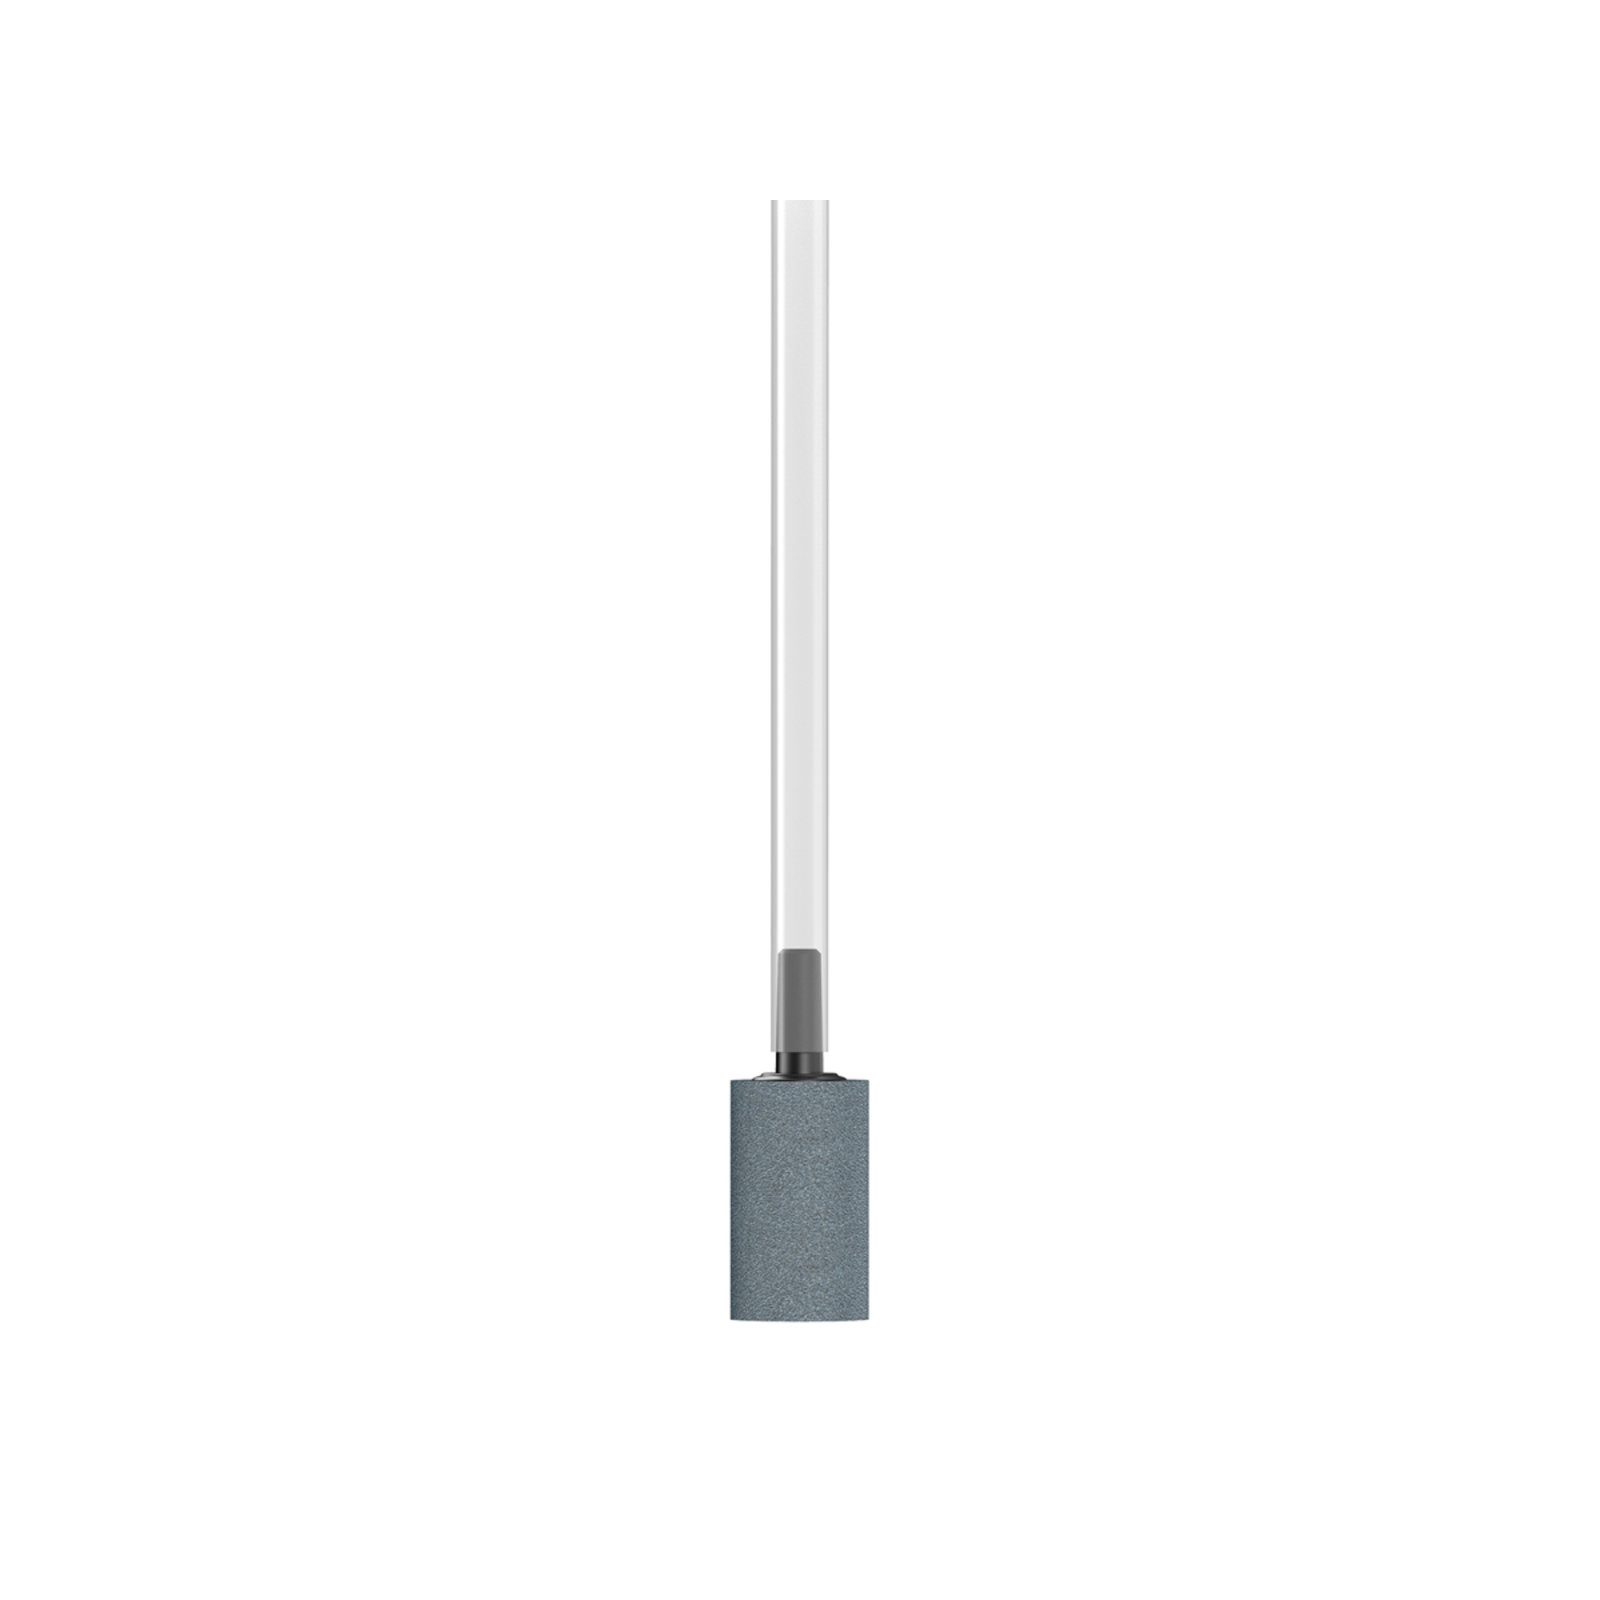 Компрессор для аквариума Aqualighter aPUMP USB (5V) бесшумный до 100 л (7910) изображение 7